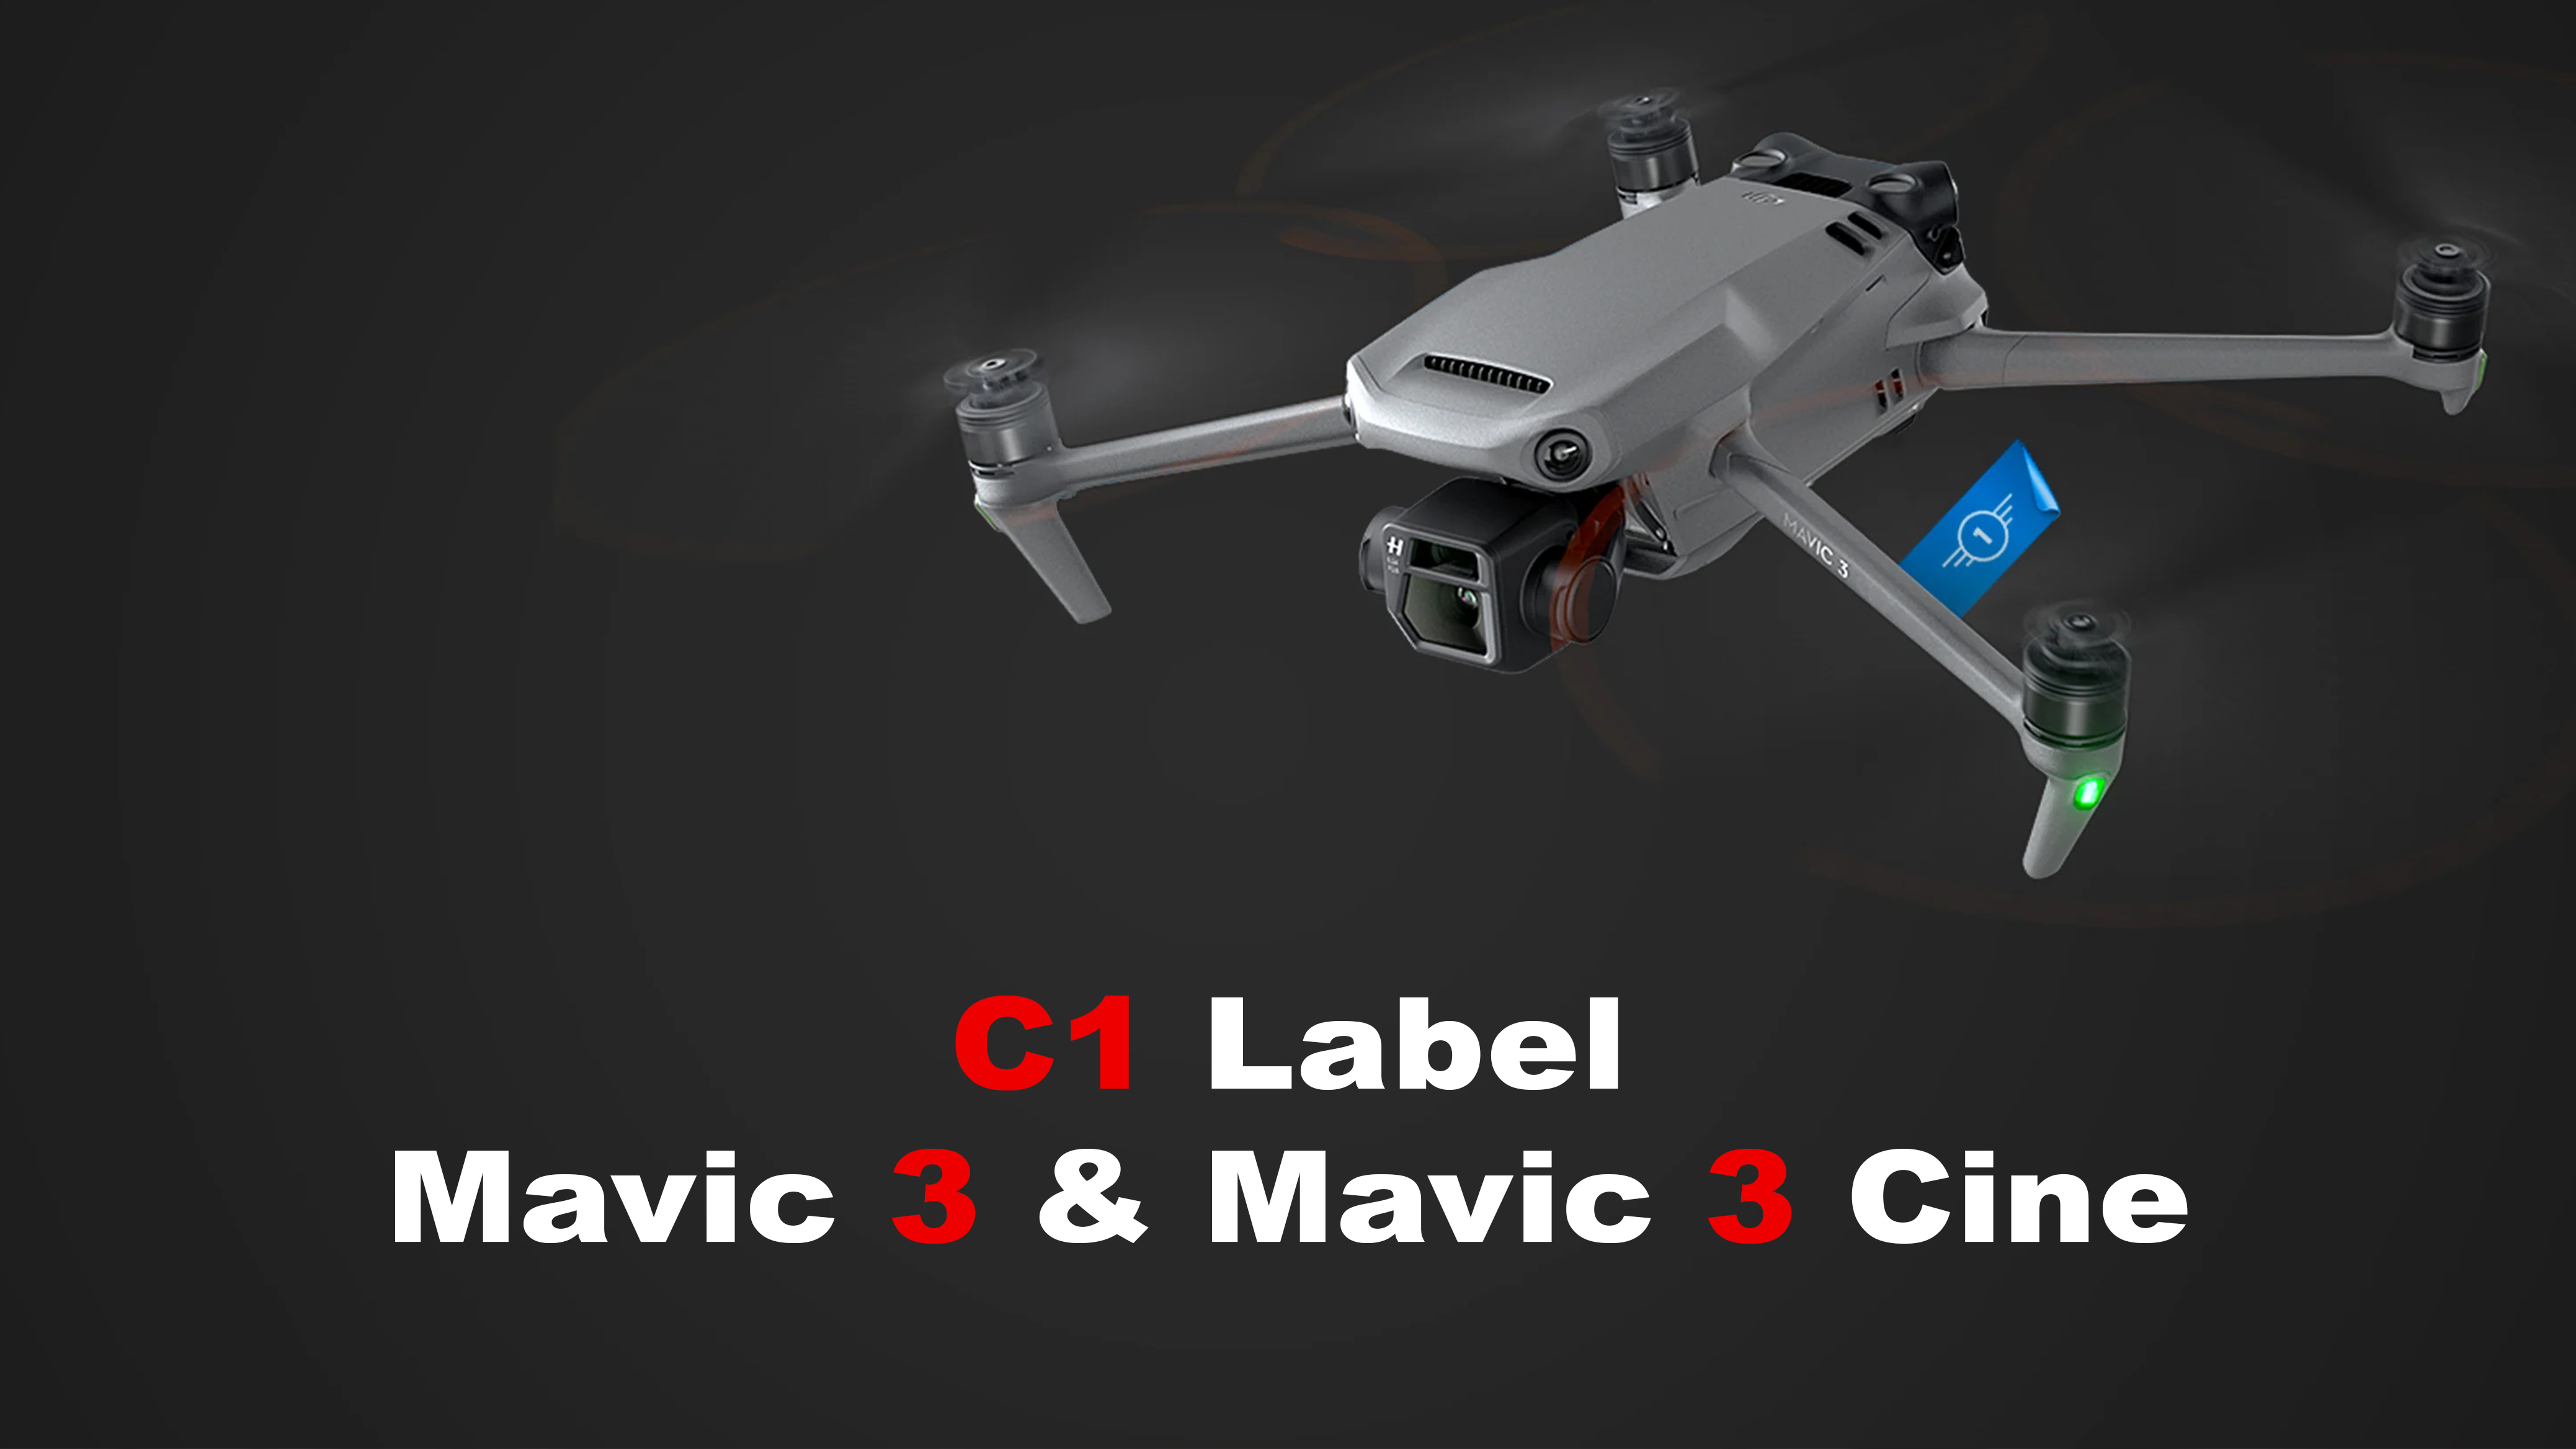 C1-label voor de Mavic 3 & Mavic 3 Cine